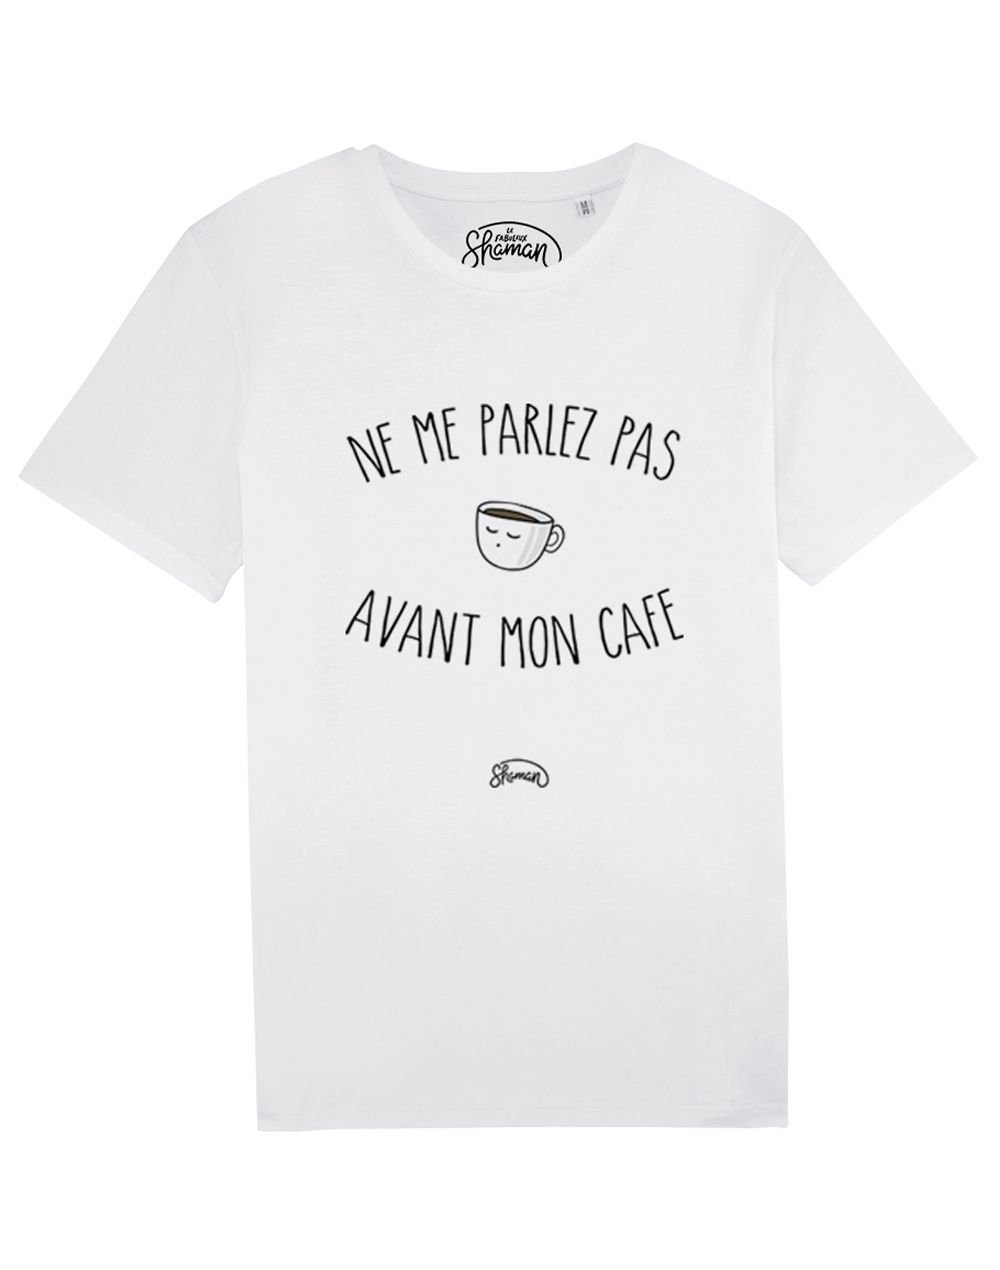 Tee-shirt "Me parlez pas avant mon café"